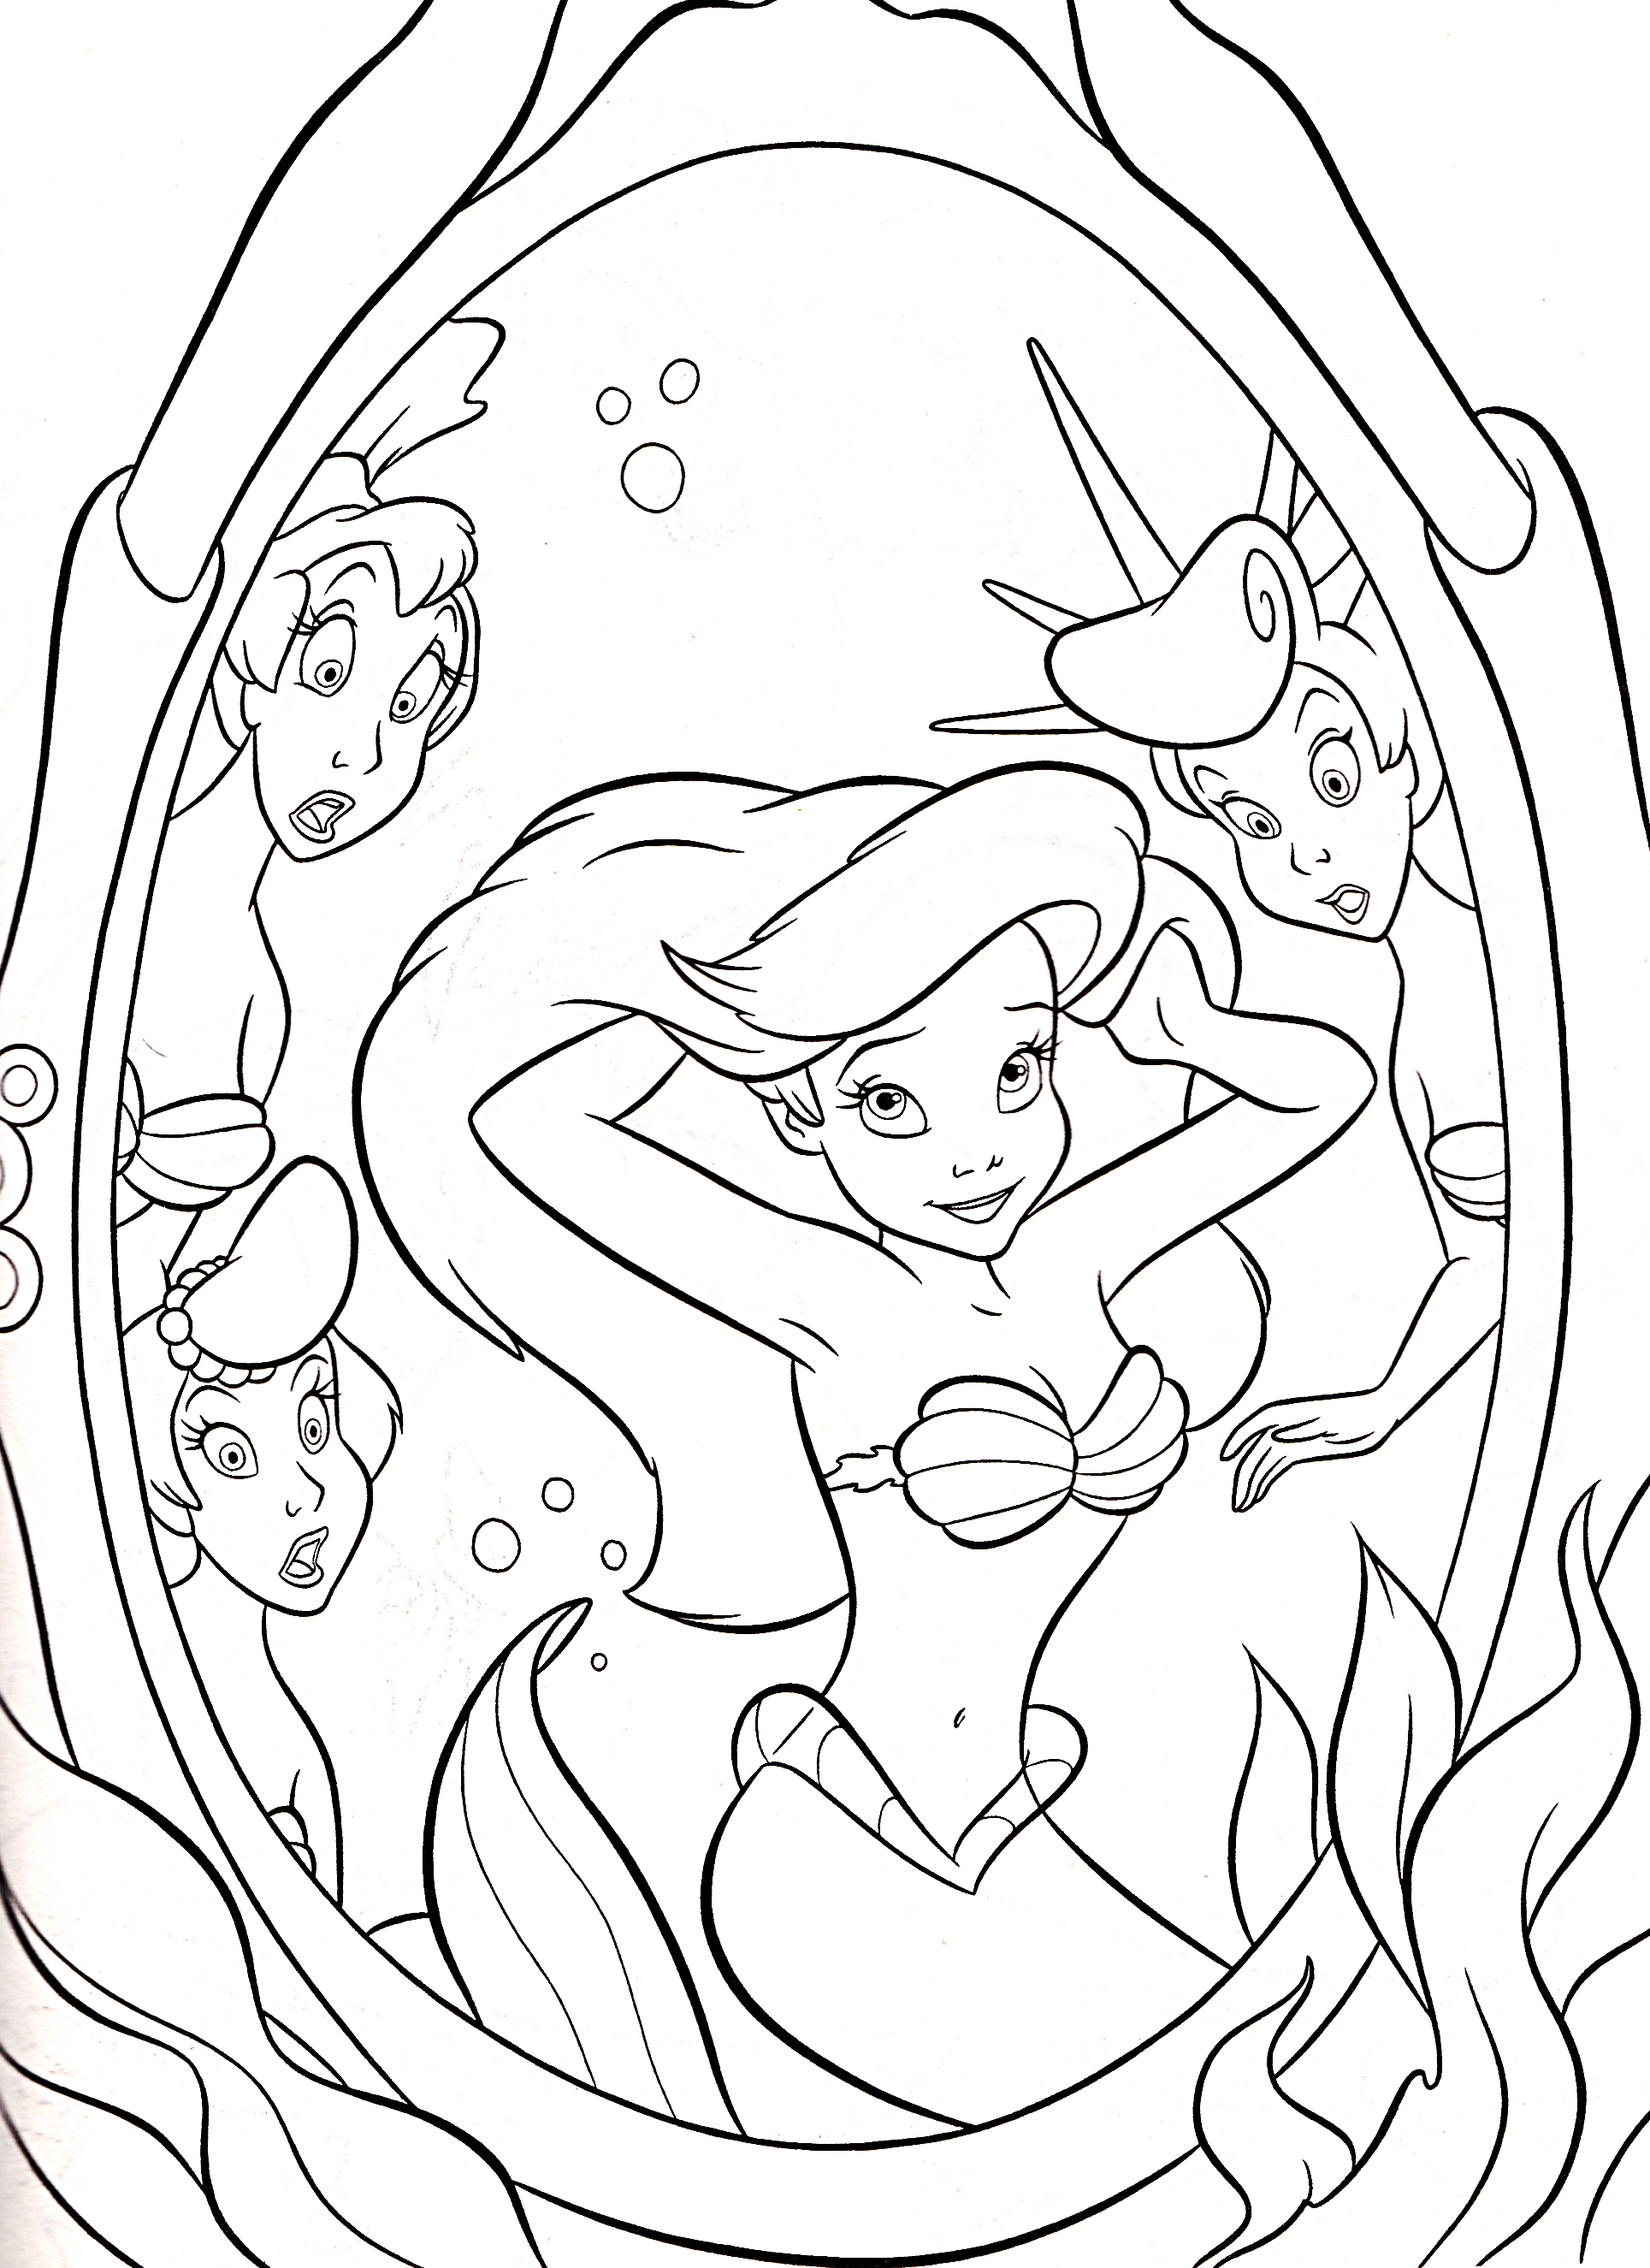  Disney coloring pages | Princess Ariel